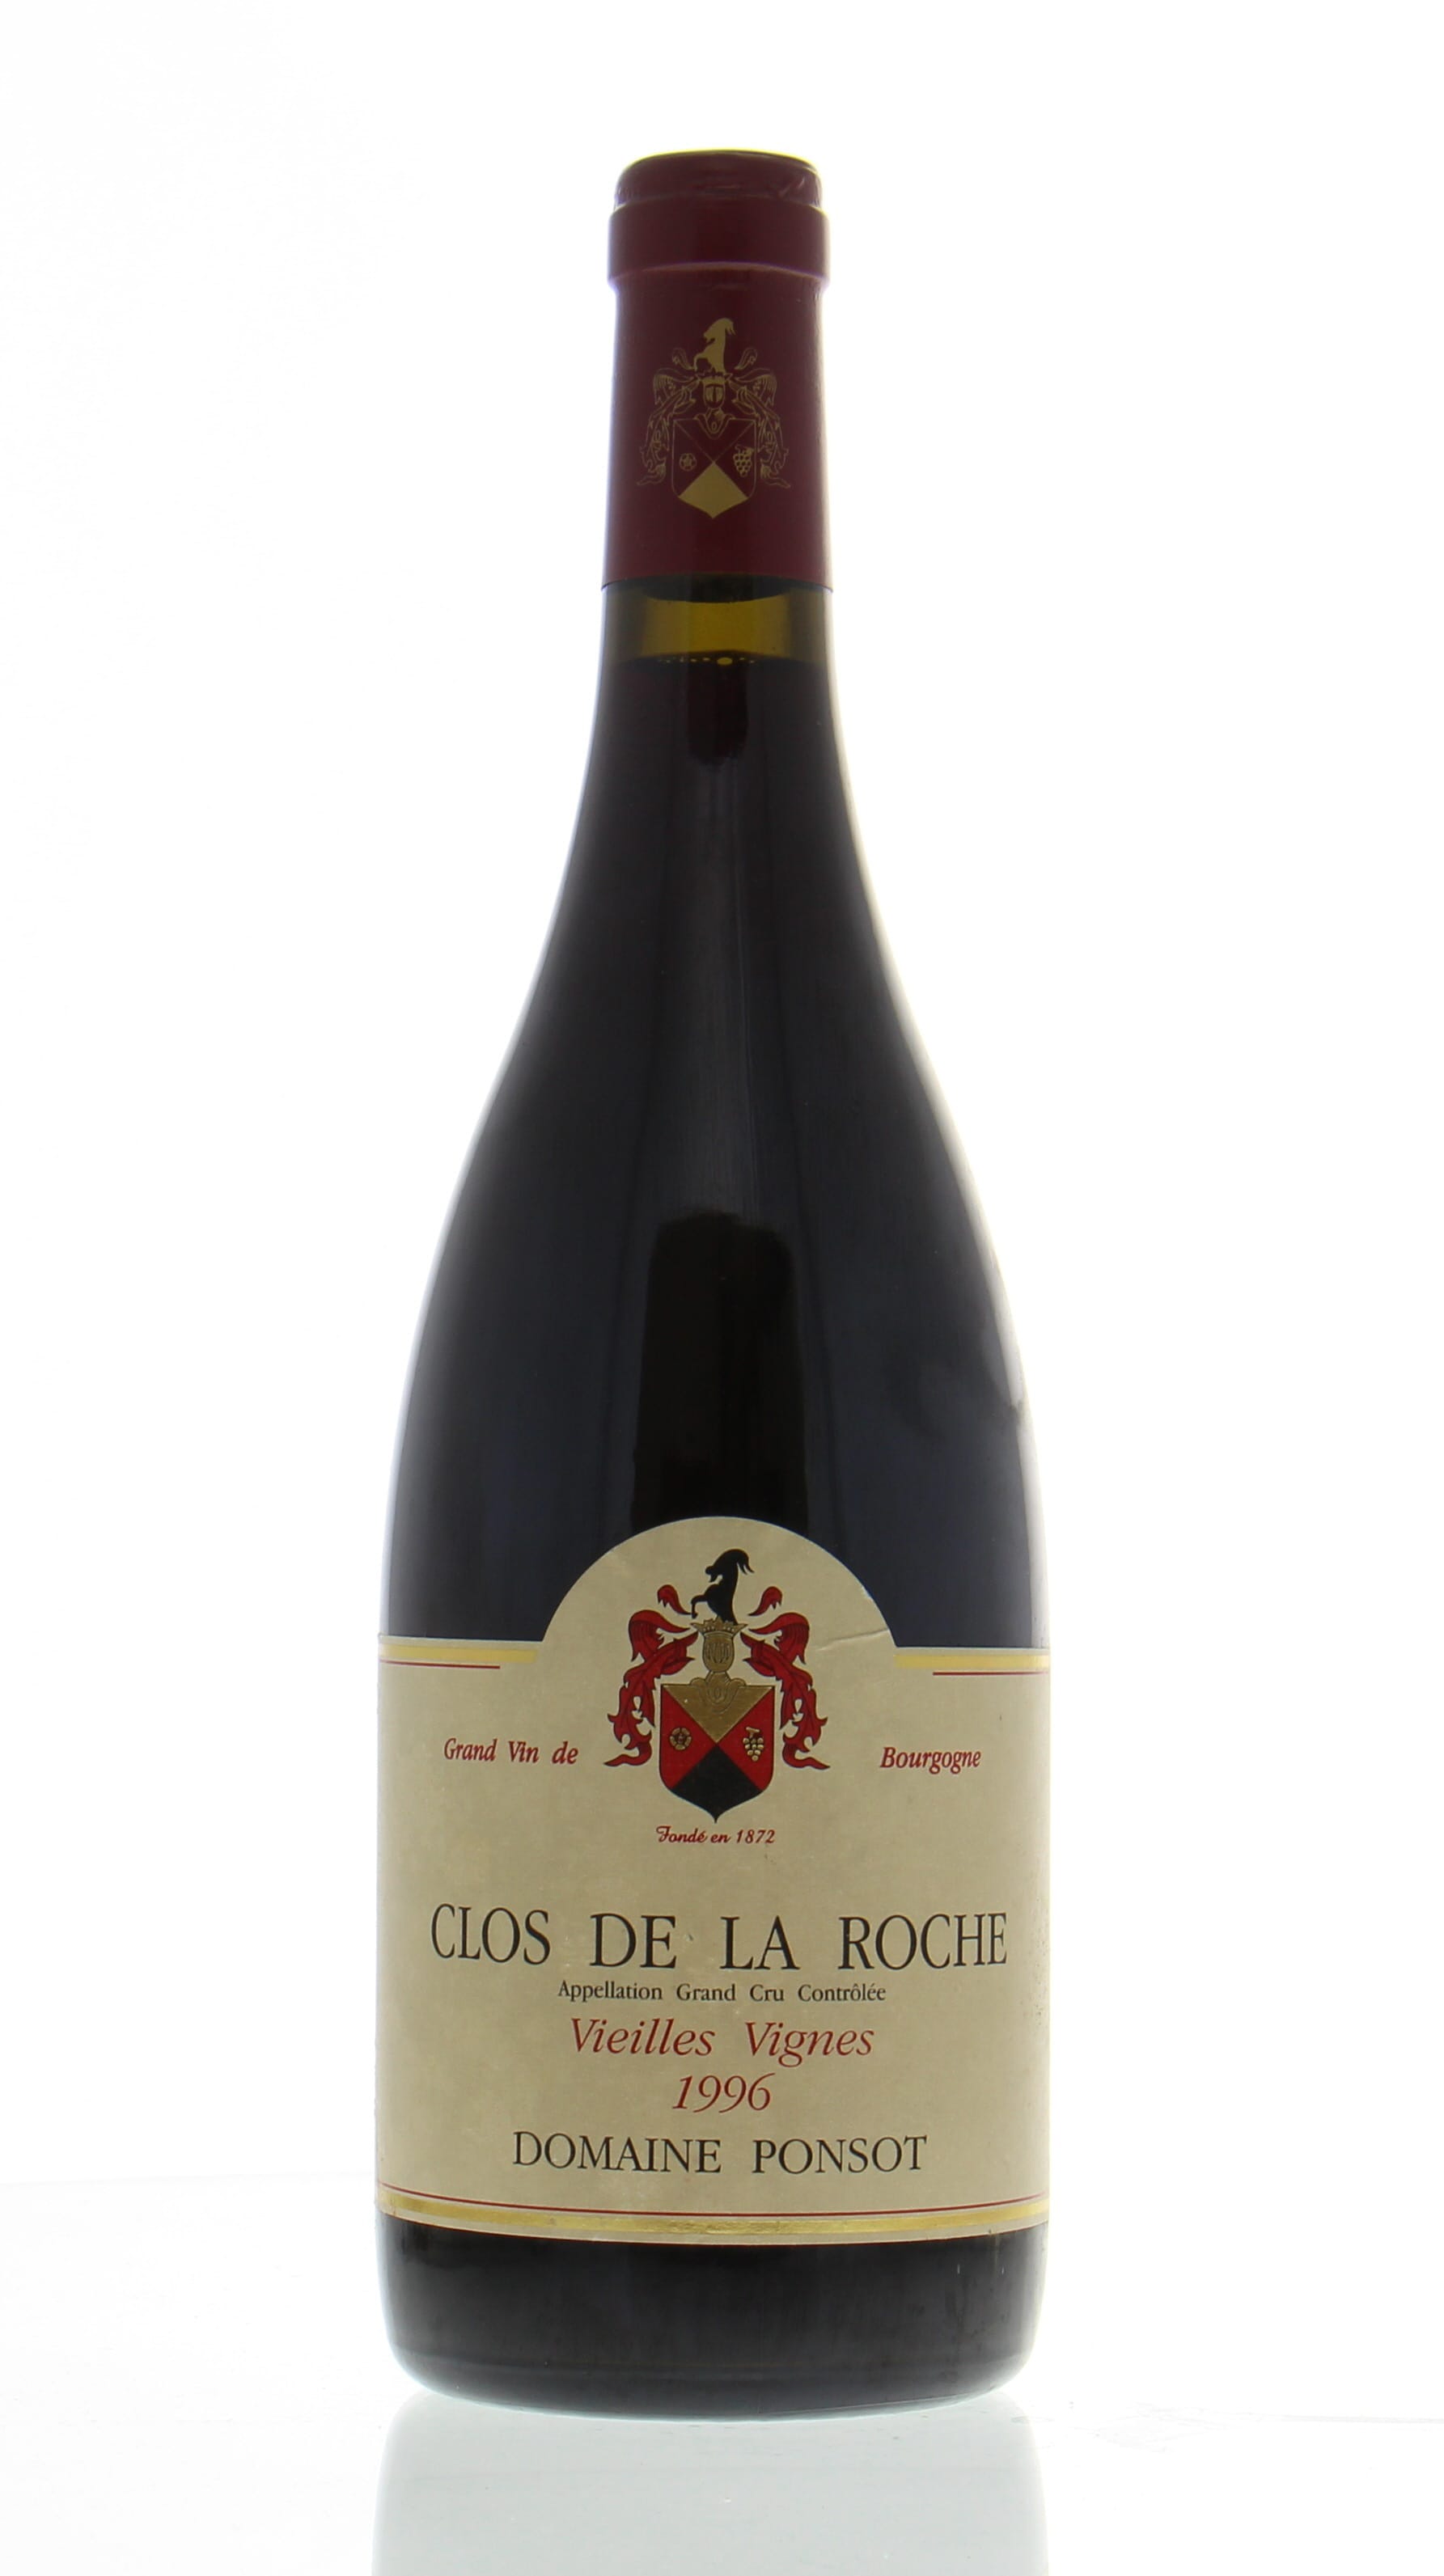 Domaine Ponsot - Clos de la Roche Cuvee Vieille Vignes 1996 Perfect